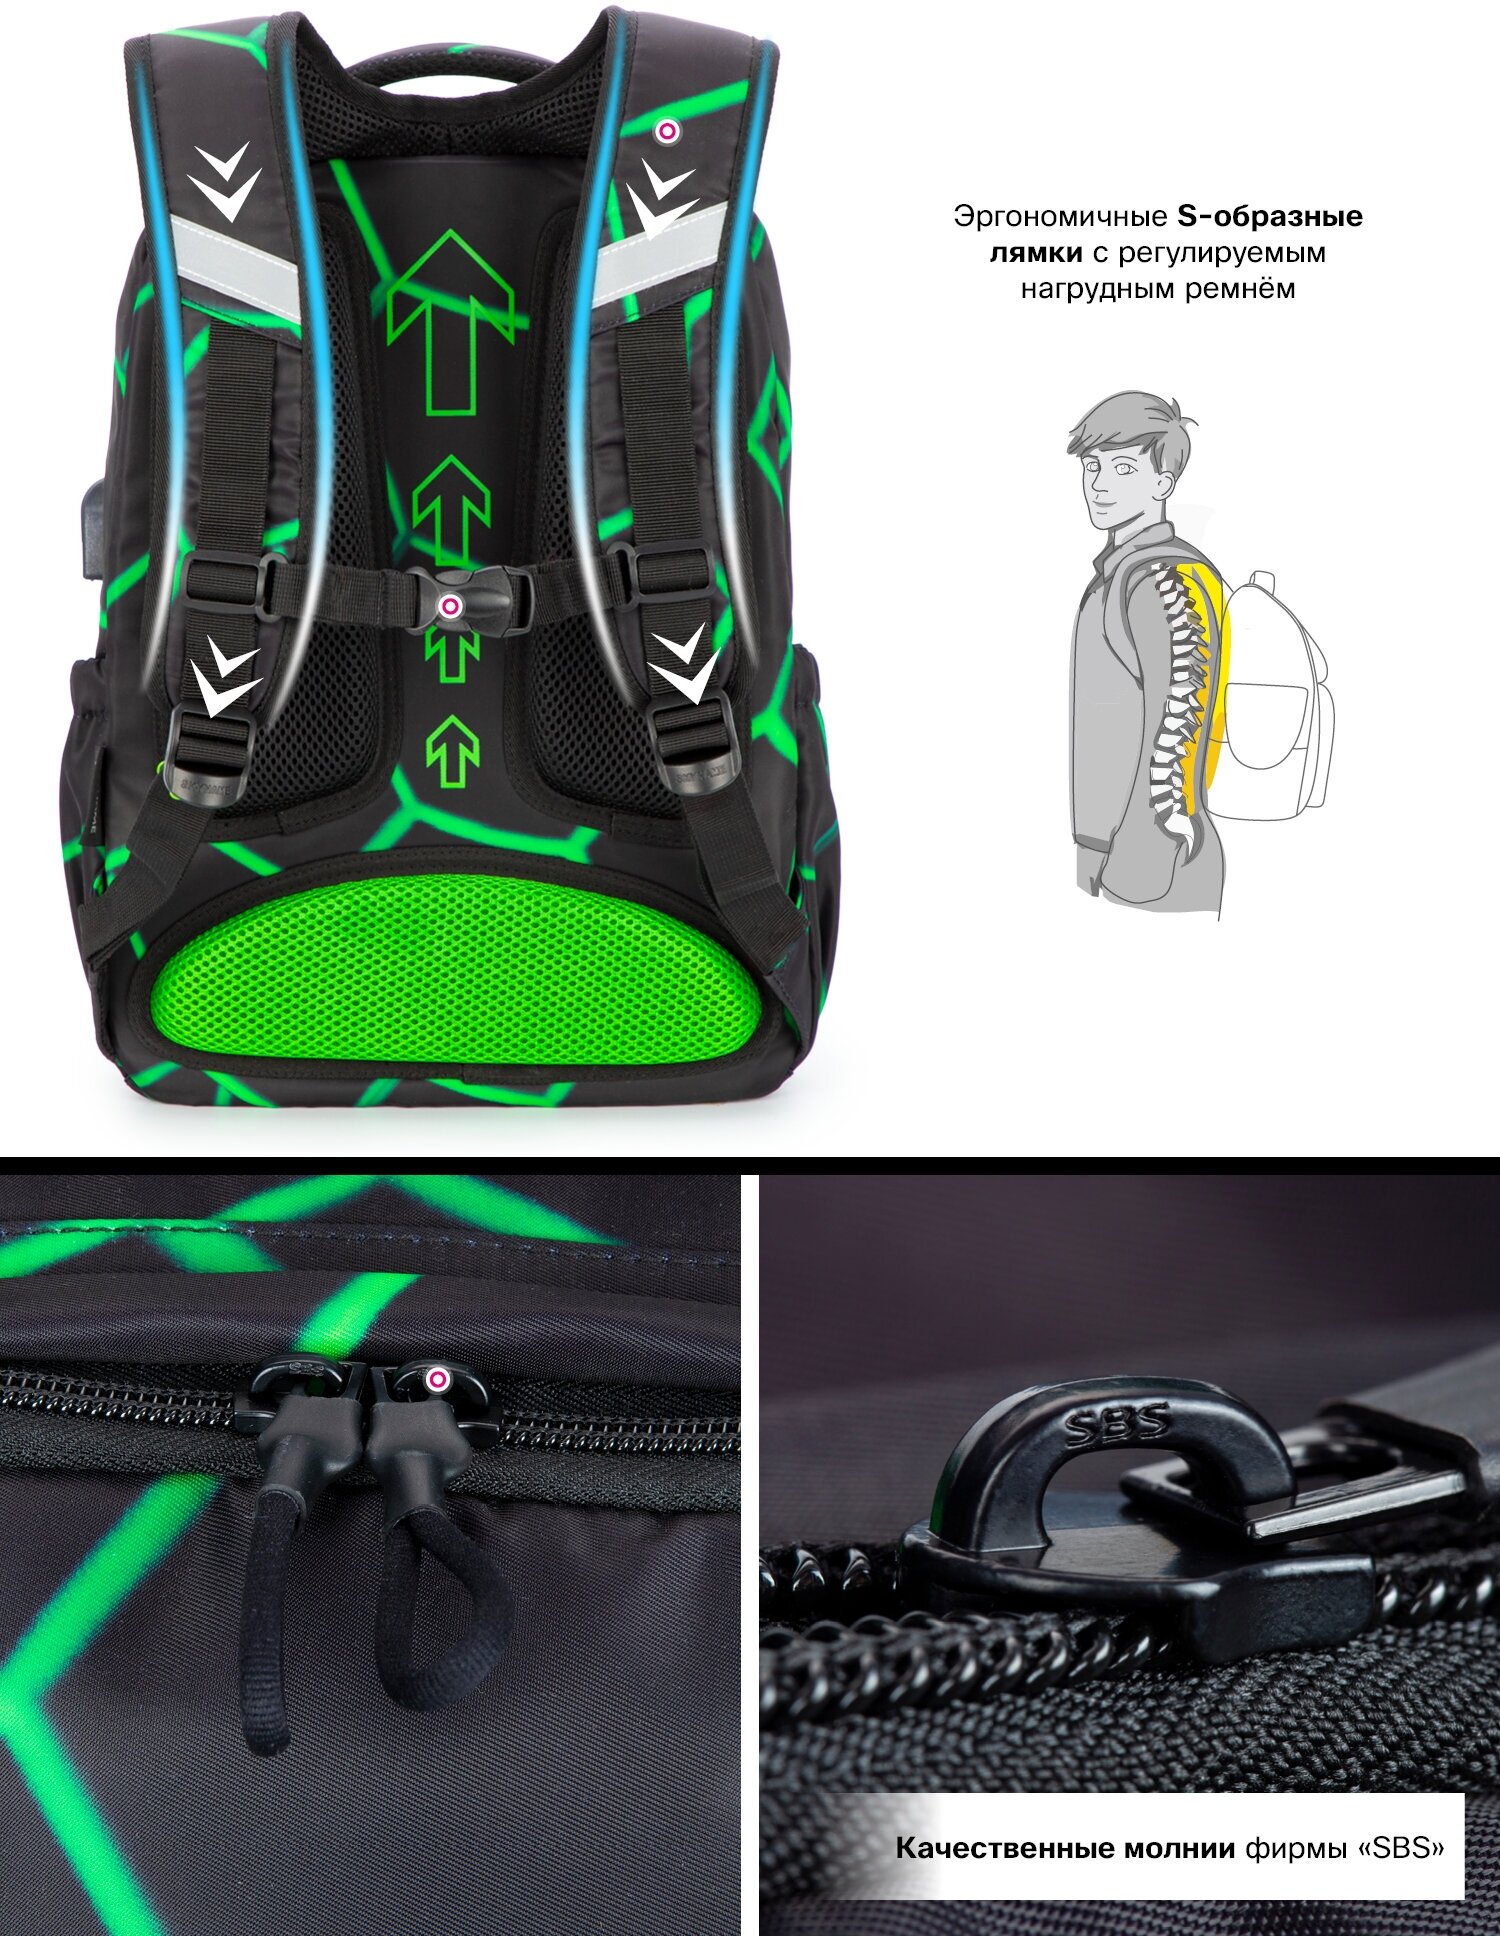 Рюкзак школьный для подростка, 20л, А4 для ноутбука, черный городской для мальчика, SkyName (СкайНейм), с анатомической спинкой и USB-слотом